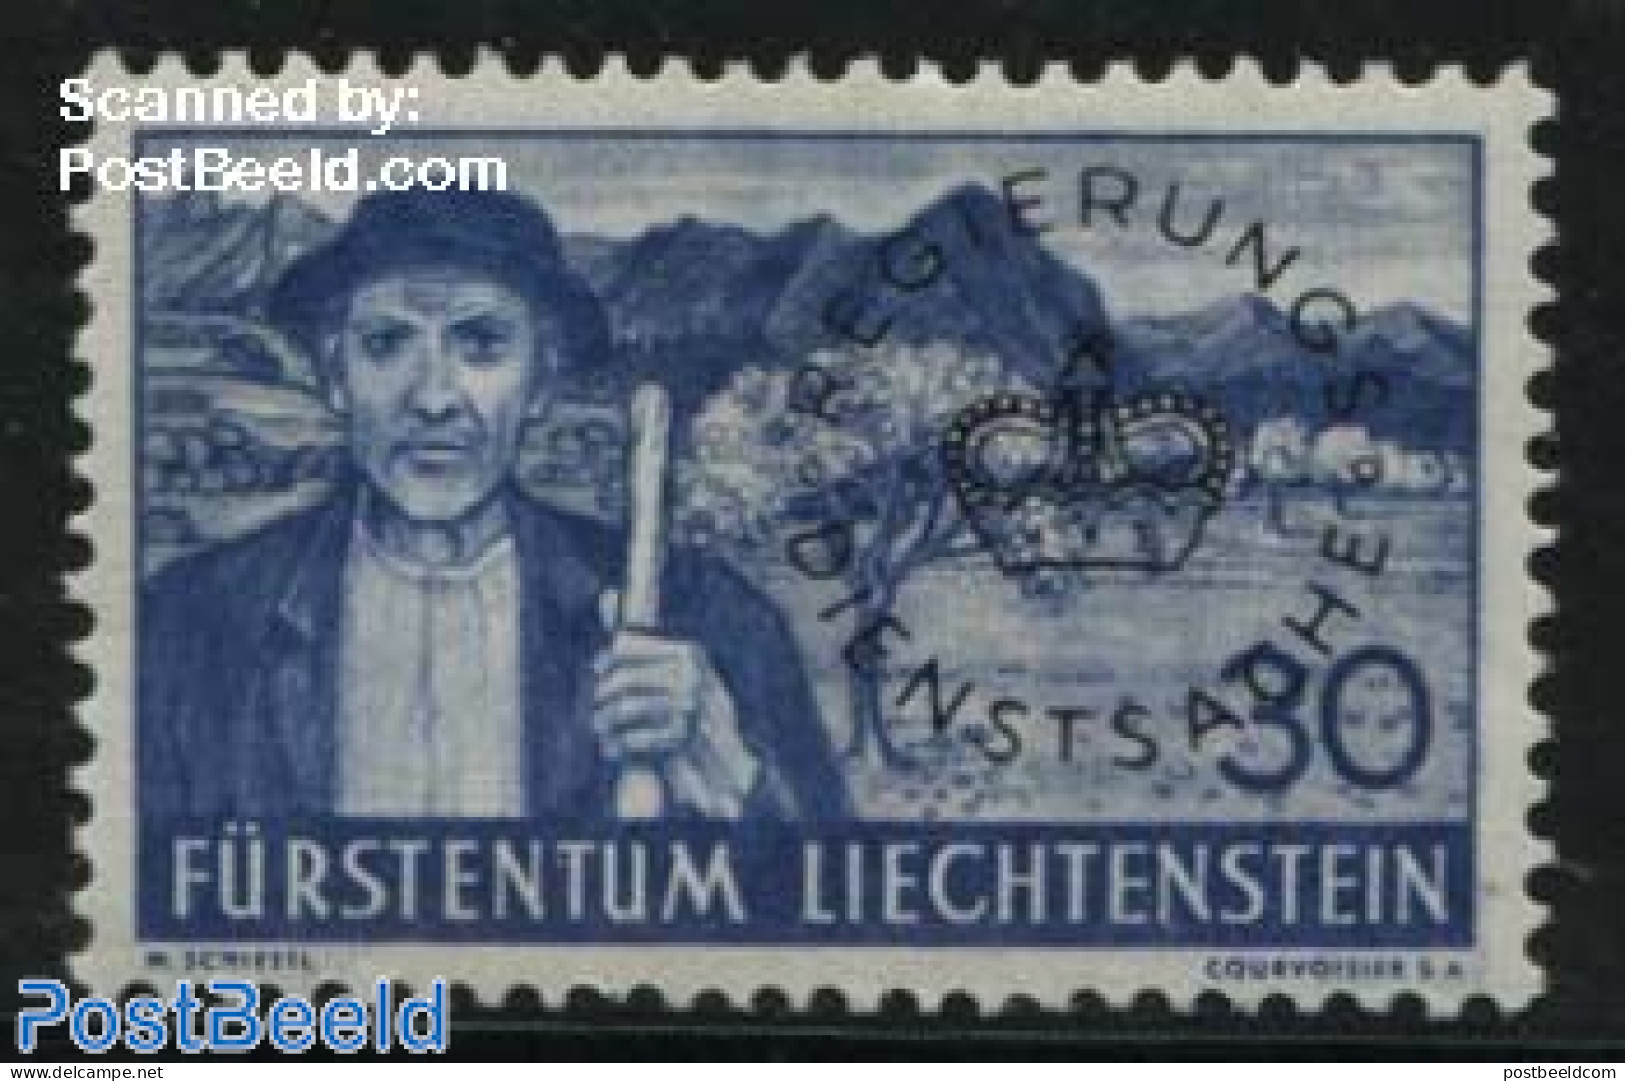 Liechtenstein 1937 30Rp, Stamp Out Of Set, Mint NH - Ongebruikt